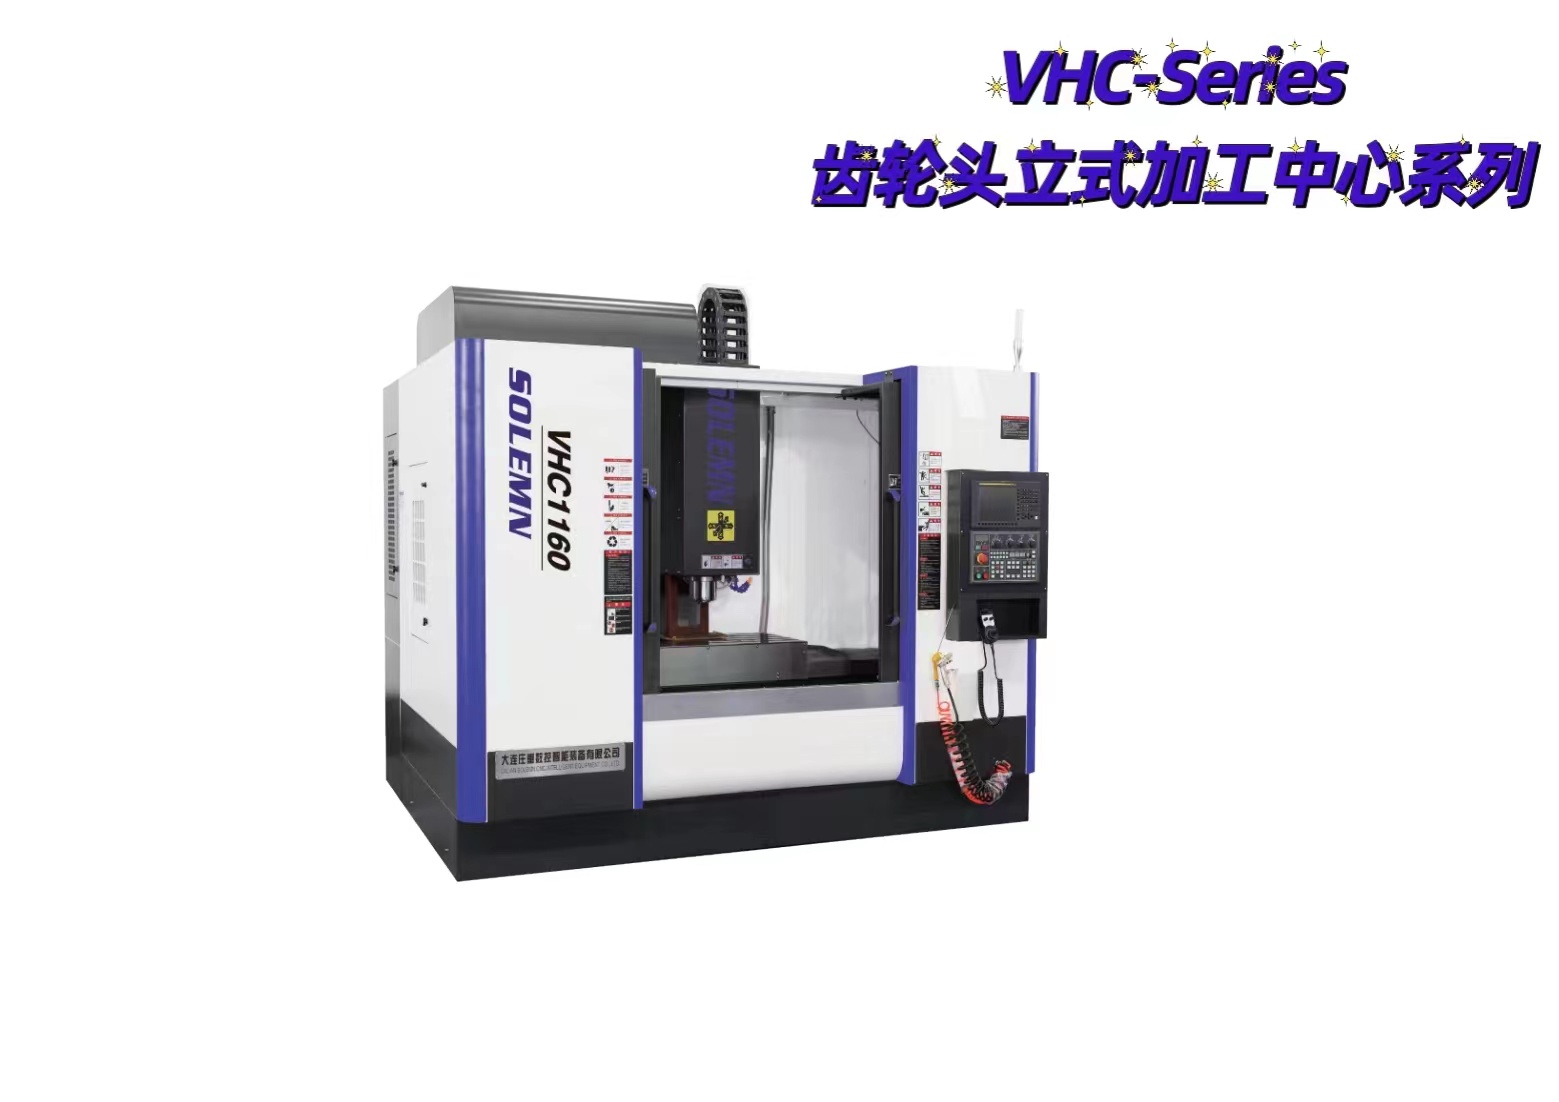 VMC-Series  立式加工中心系列